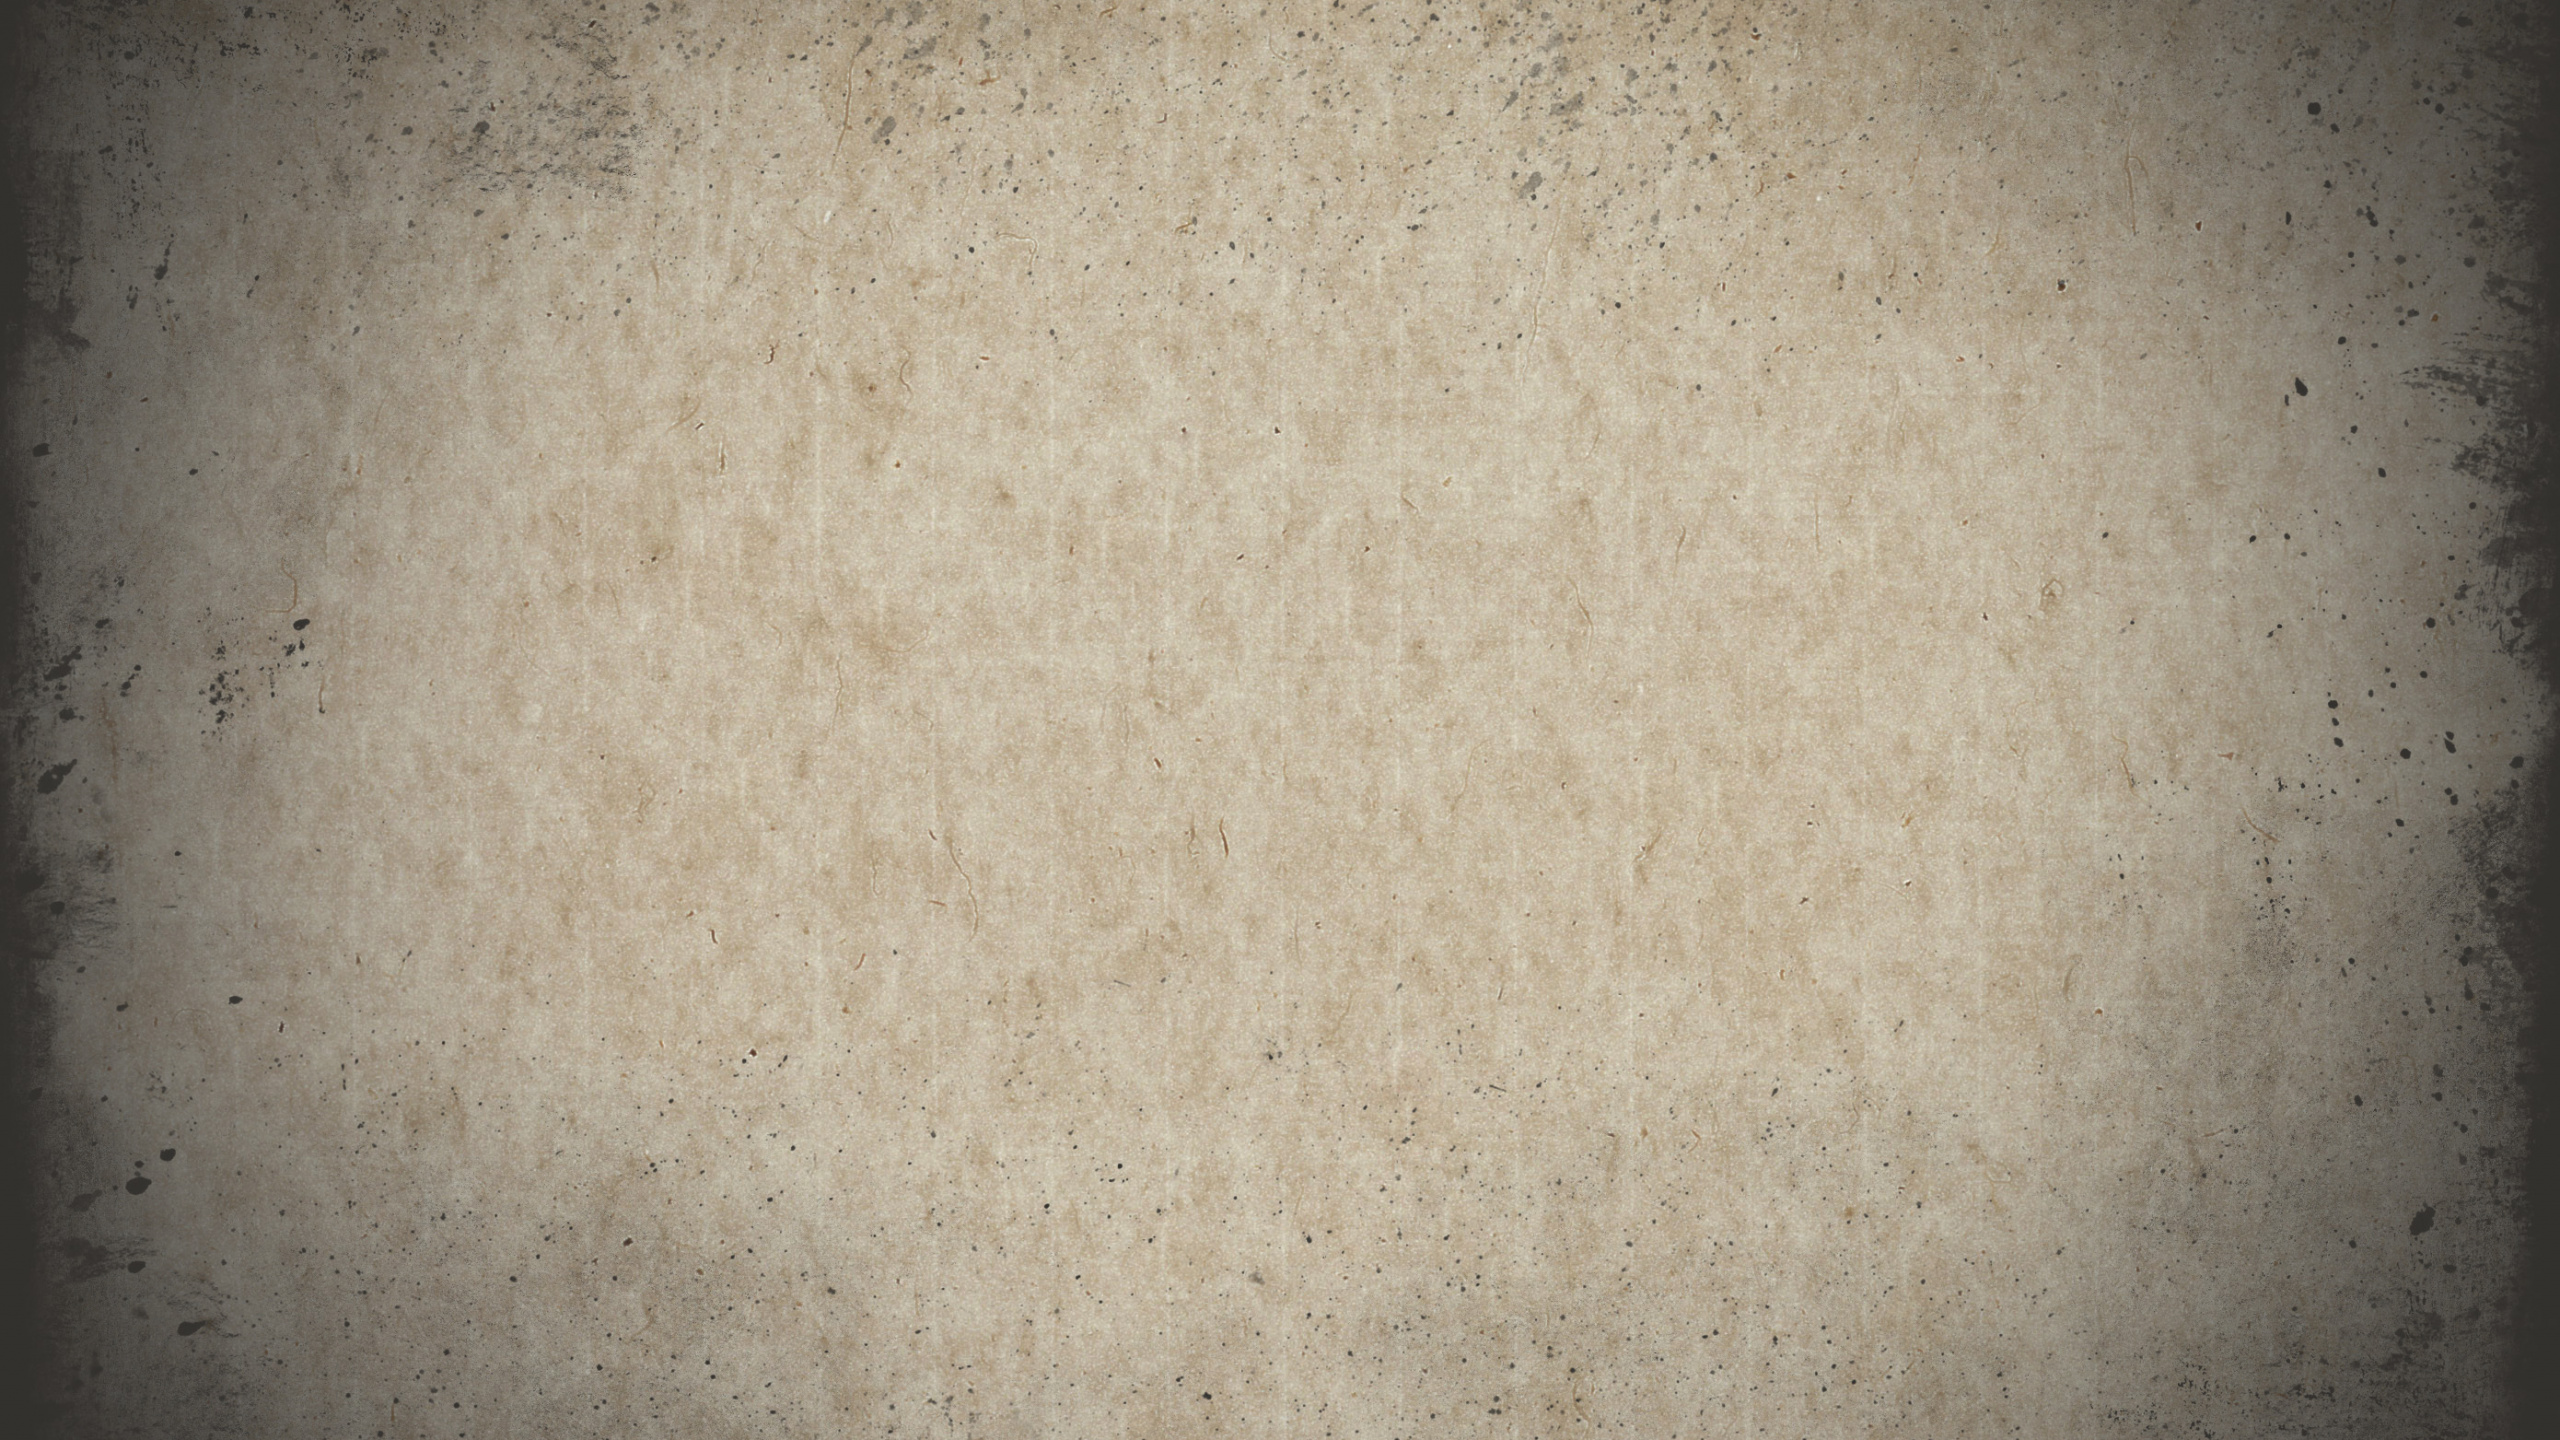 Boîte Étiquetée Blanche et Noire. Wallpaper in 2560x1440 Resolution